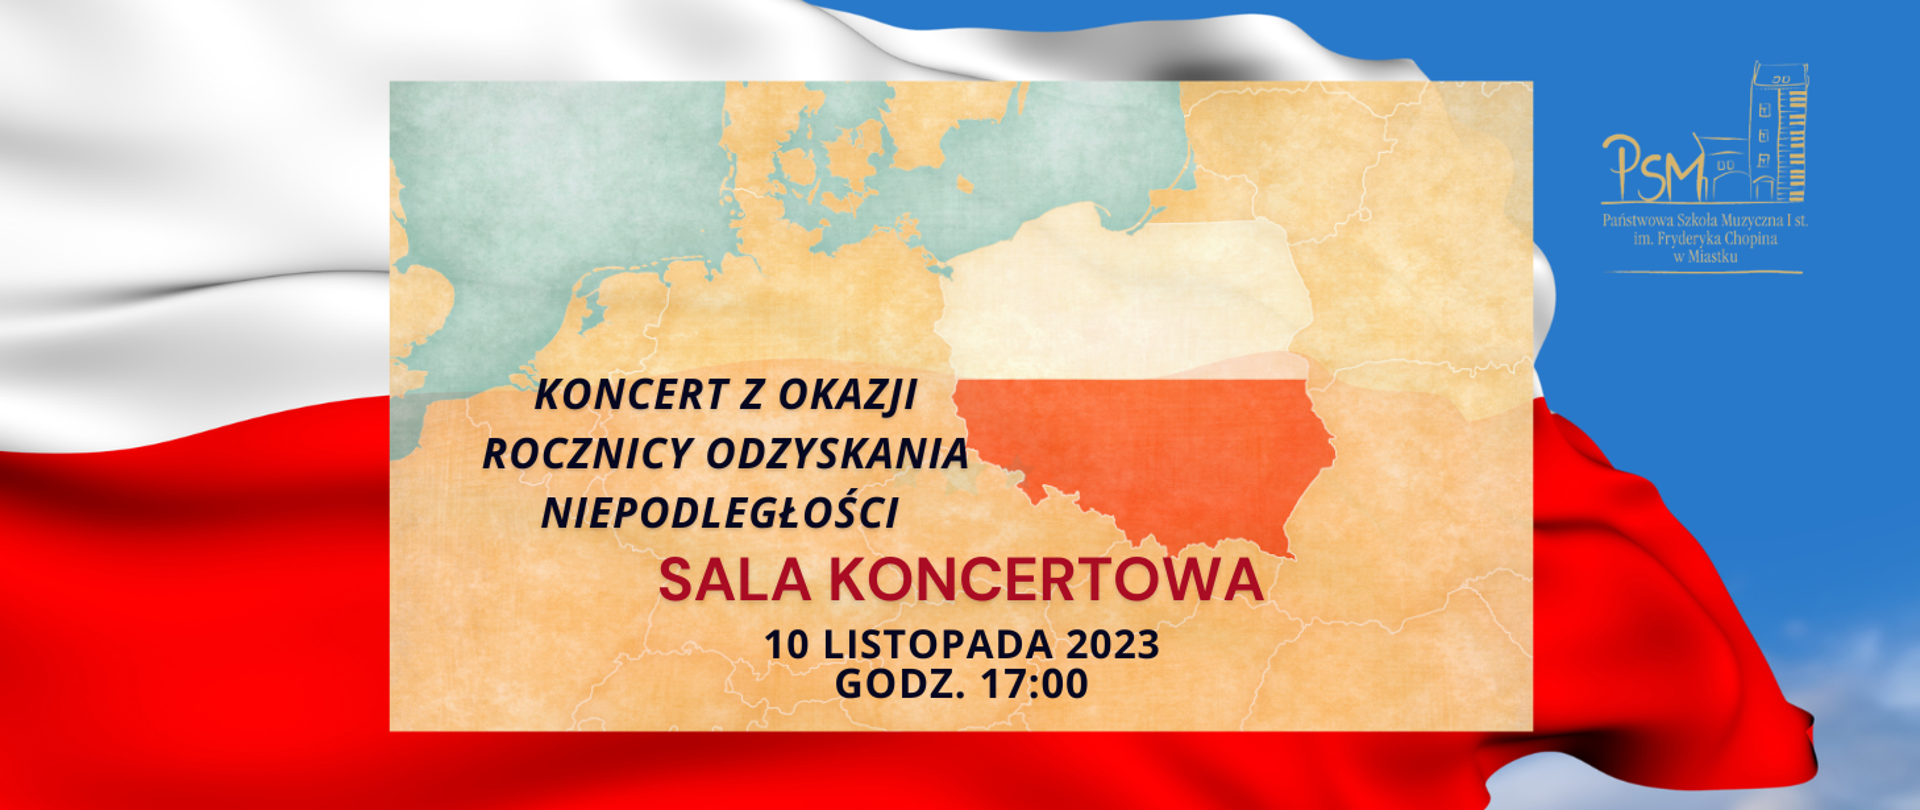 Grafika w tle przedstawiająca flagę polski powiewająca na błękitnym niebie, na środku zaznaczony jest kontur polski w barwach narodowych na tle fragmentu europy. 10 listopada 2023 r. g. 17:00 SALA KONCERTOWA. 